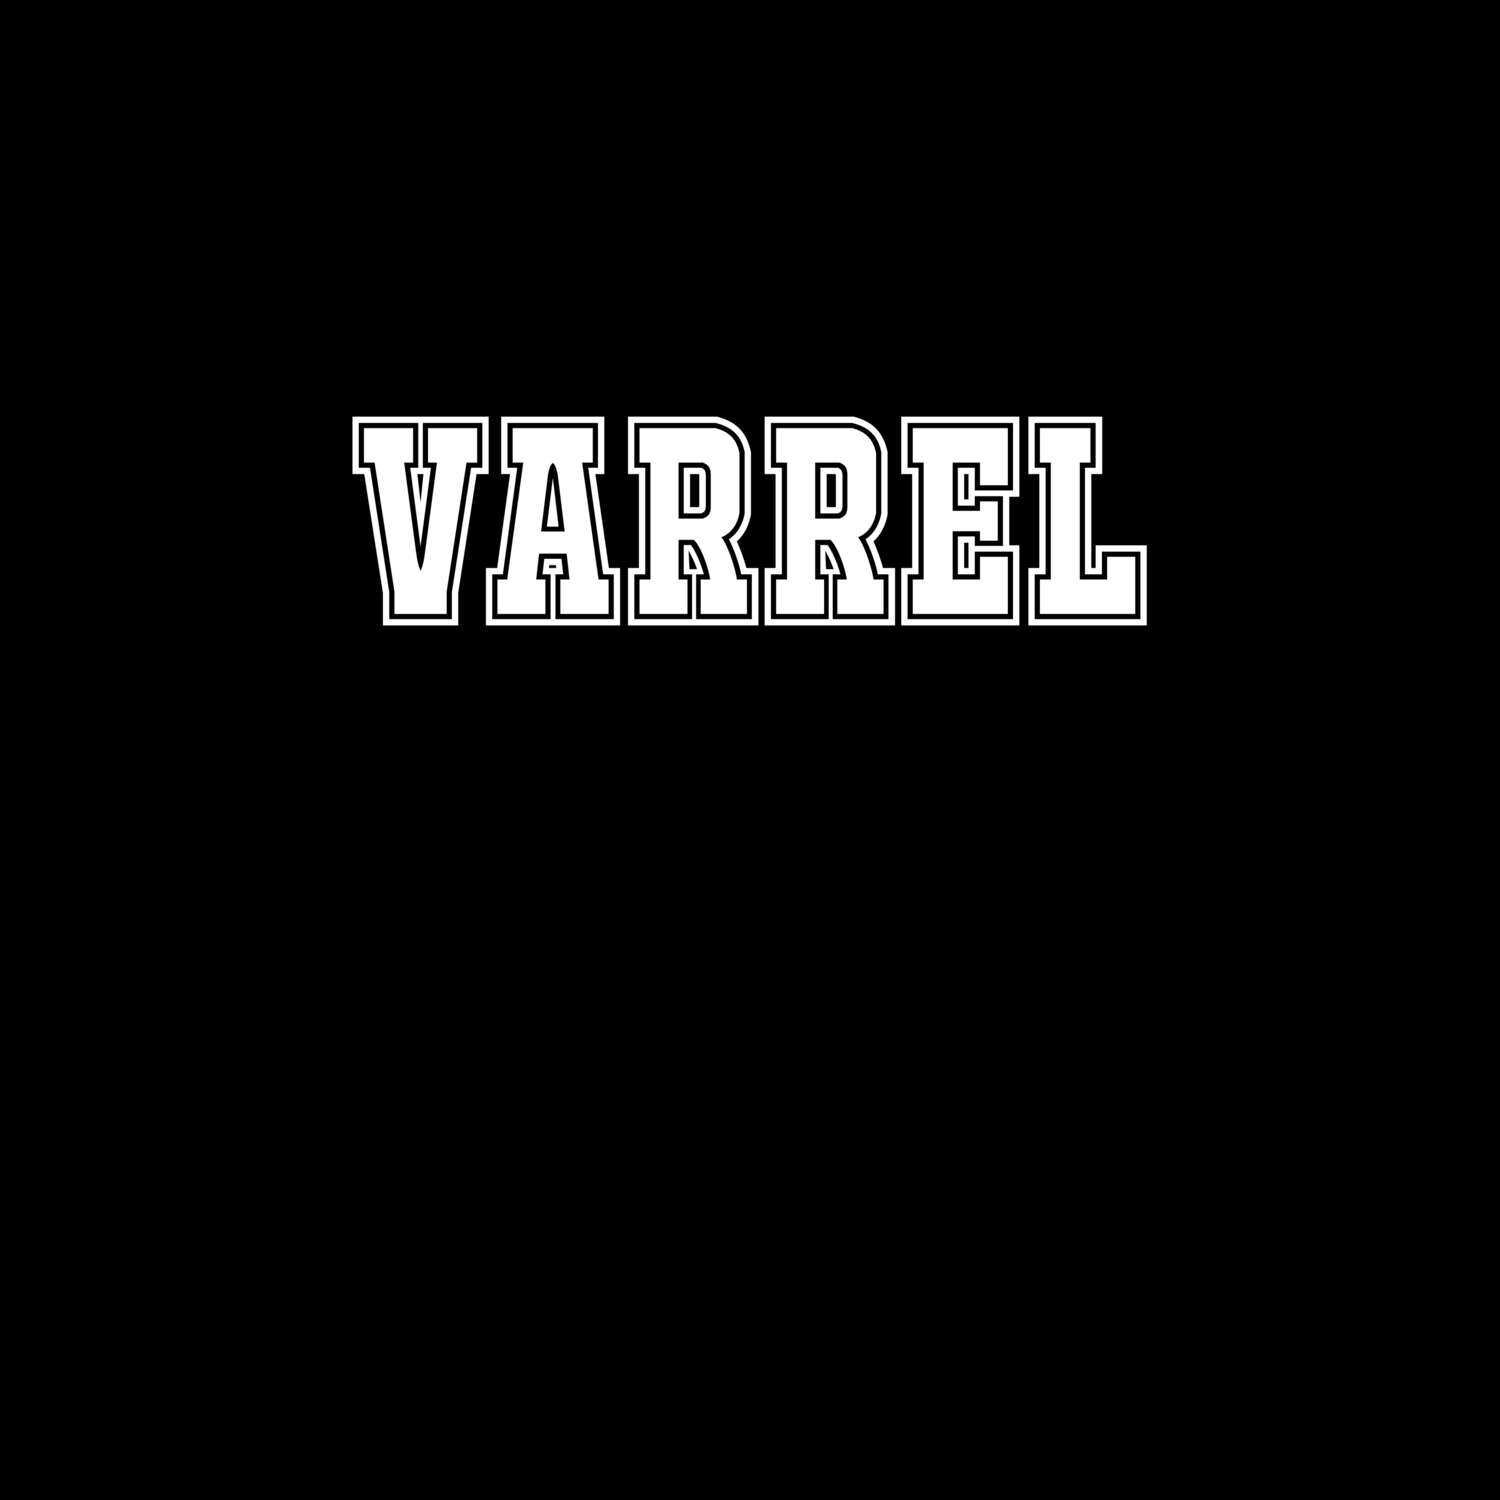 Varrel T-Shirt »Classic«